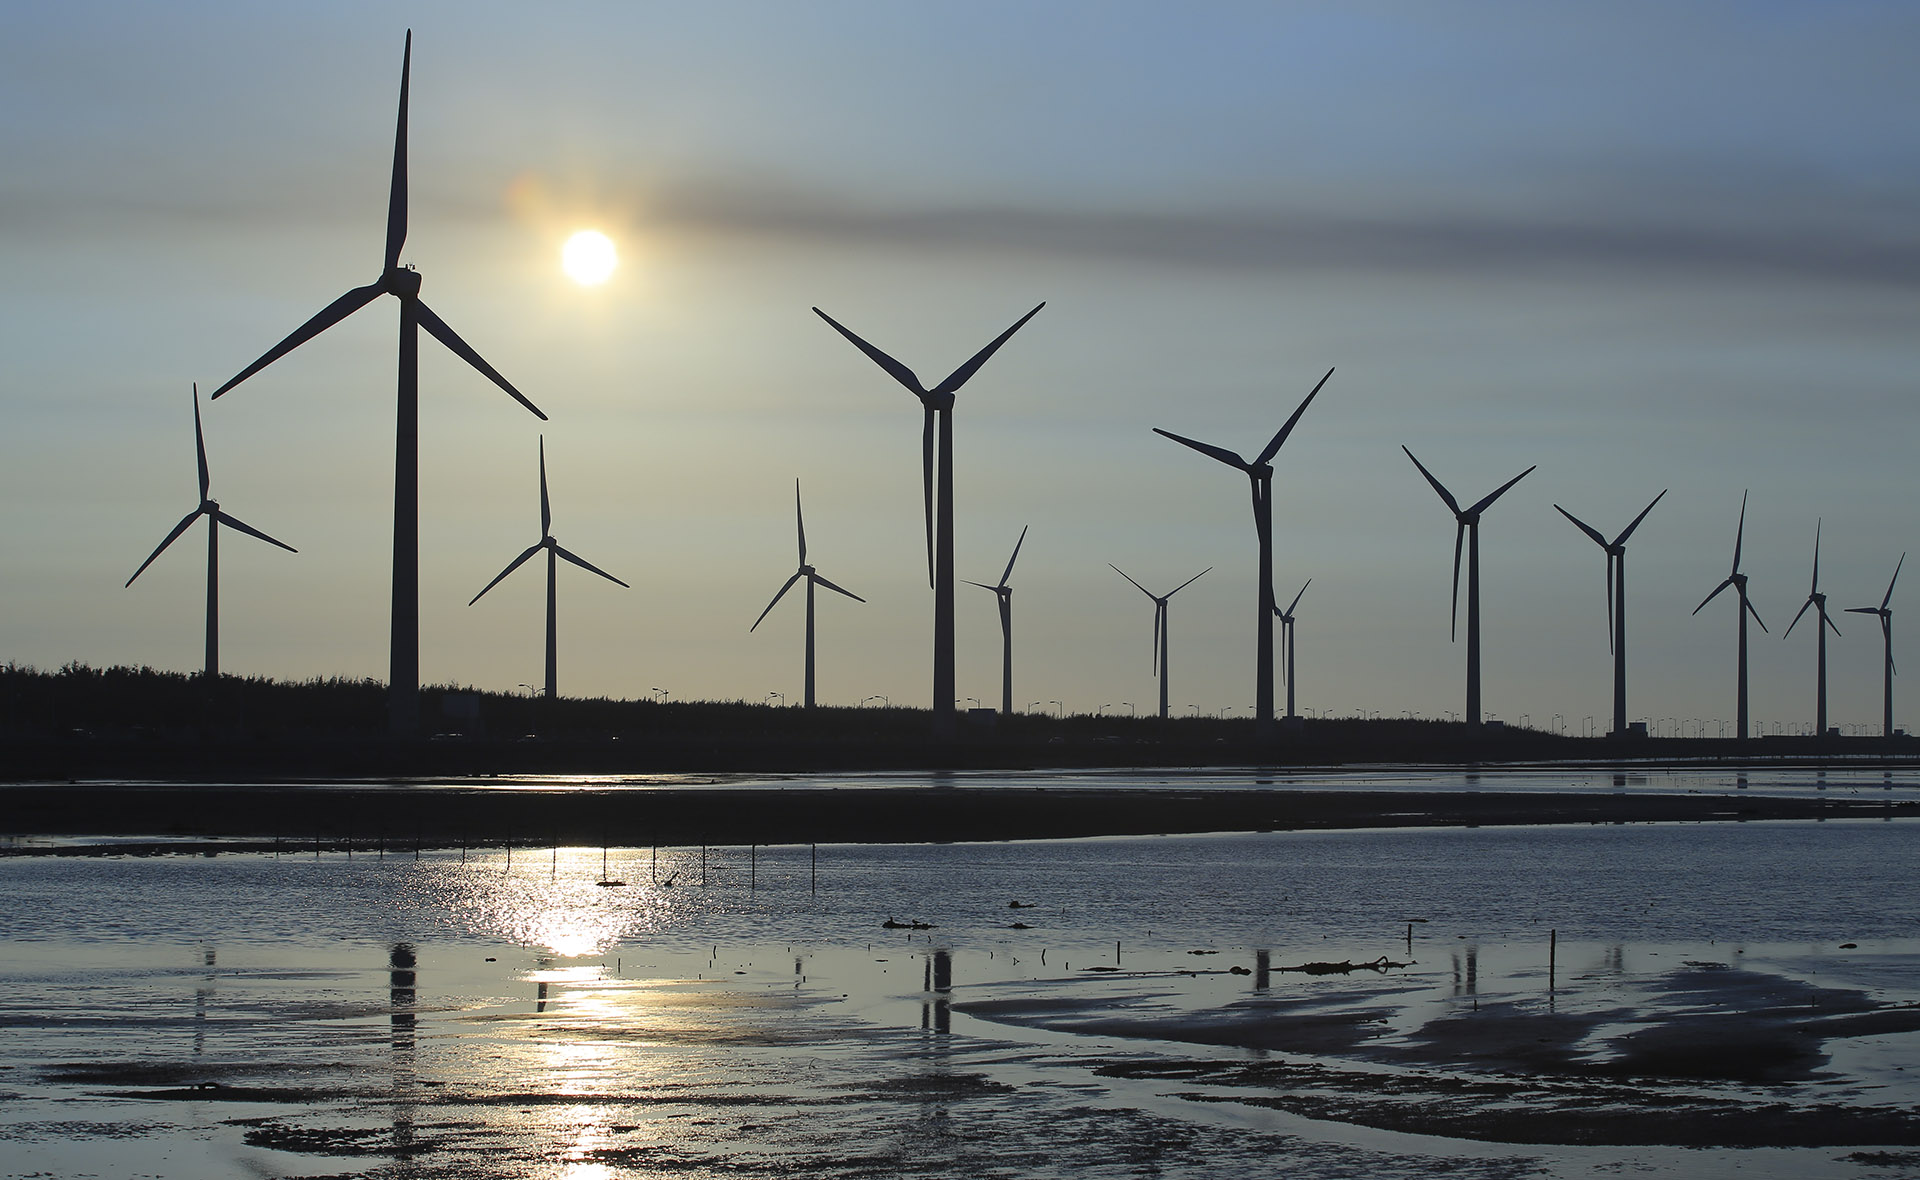 Fotografía de Molinos, aerogeneradores, energías renovables, medioambiente, sostenibilidad